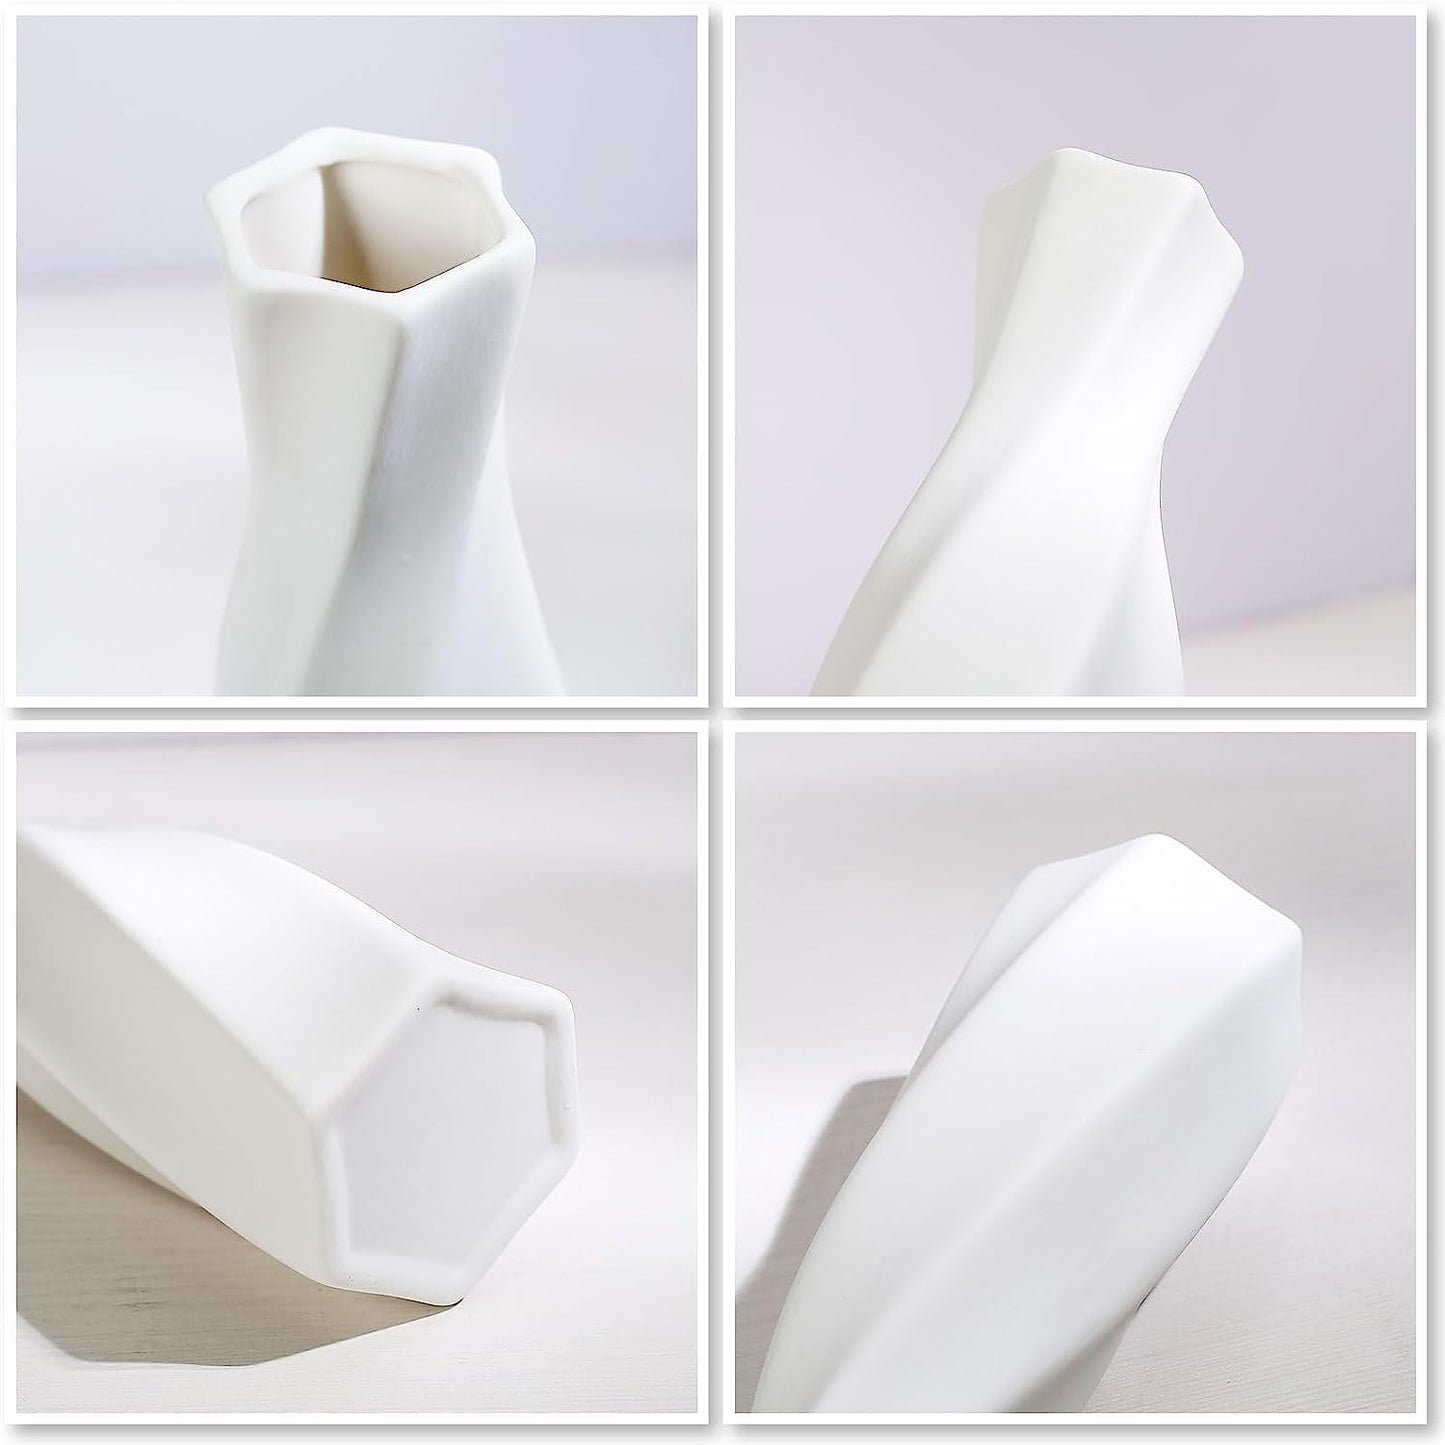 Ceramic Vase - Flowers Vase Modern Home Decor, White Geometric Decorative Vases for Living Room, Dried Flower Vase, Mantel, Table Decoration